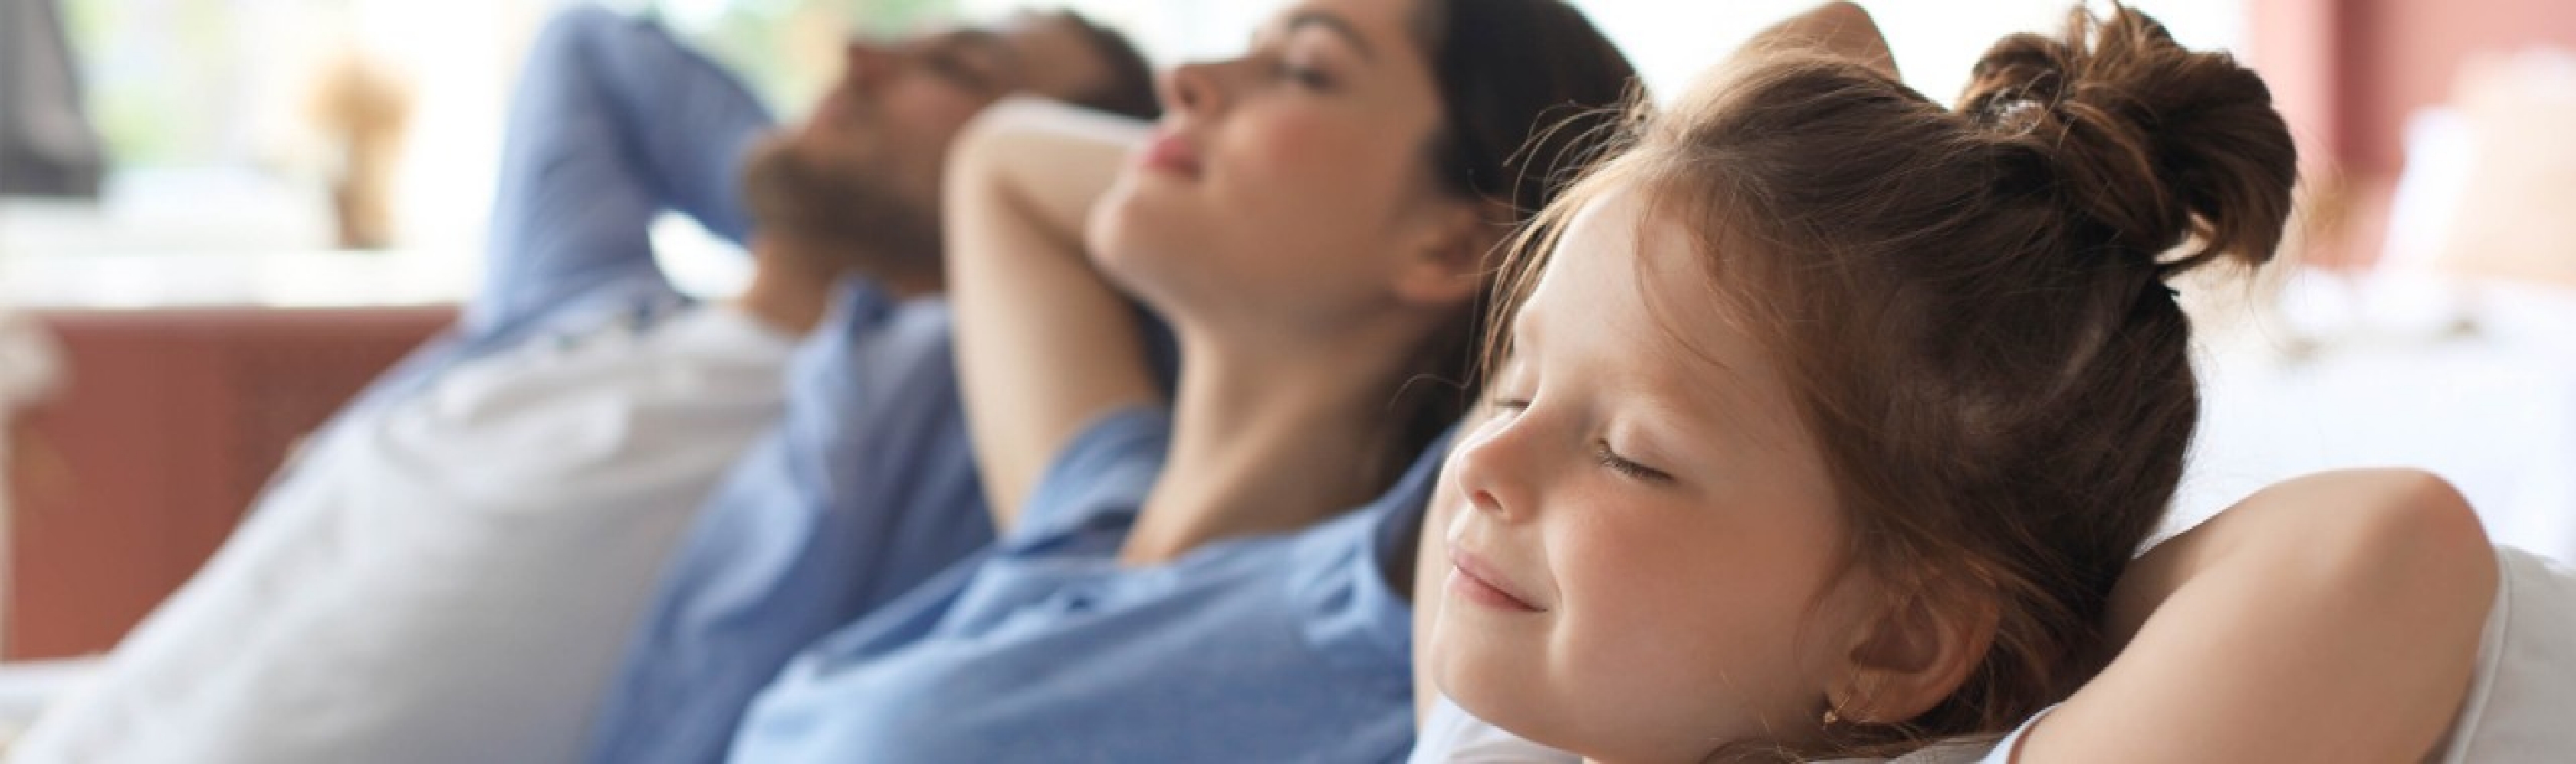 Più qualità di vita in famiglia: genitori e figlia si concedono insieme una pausa di relax sul divano.